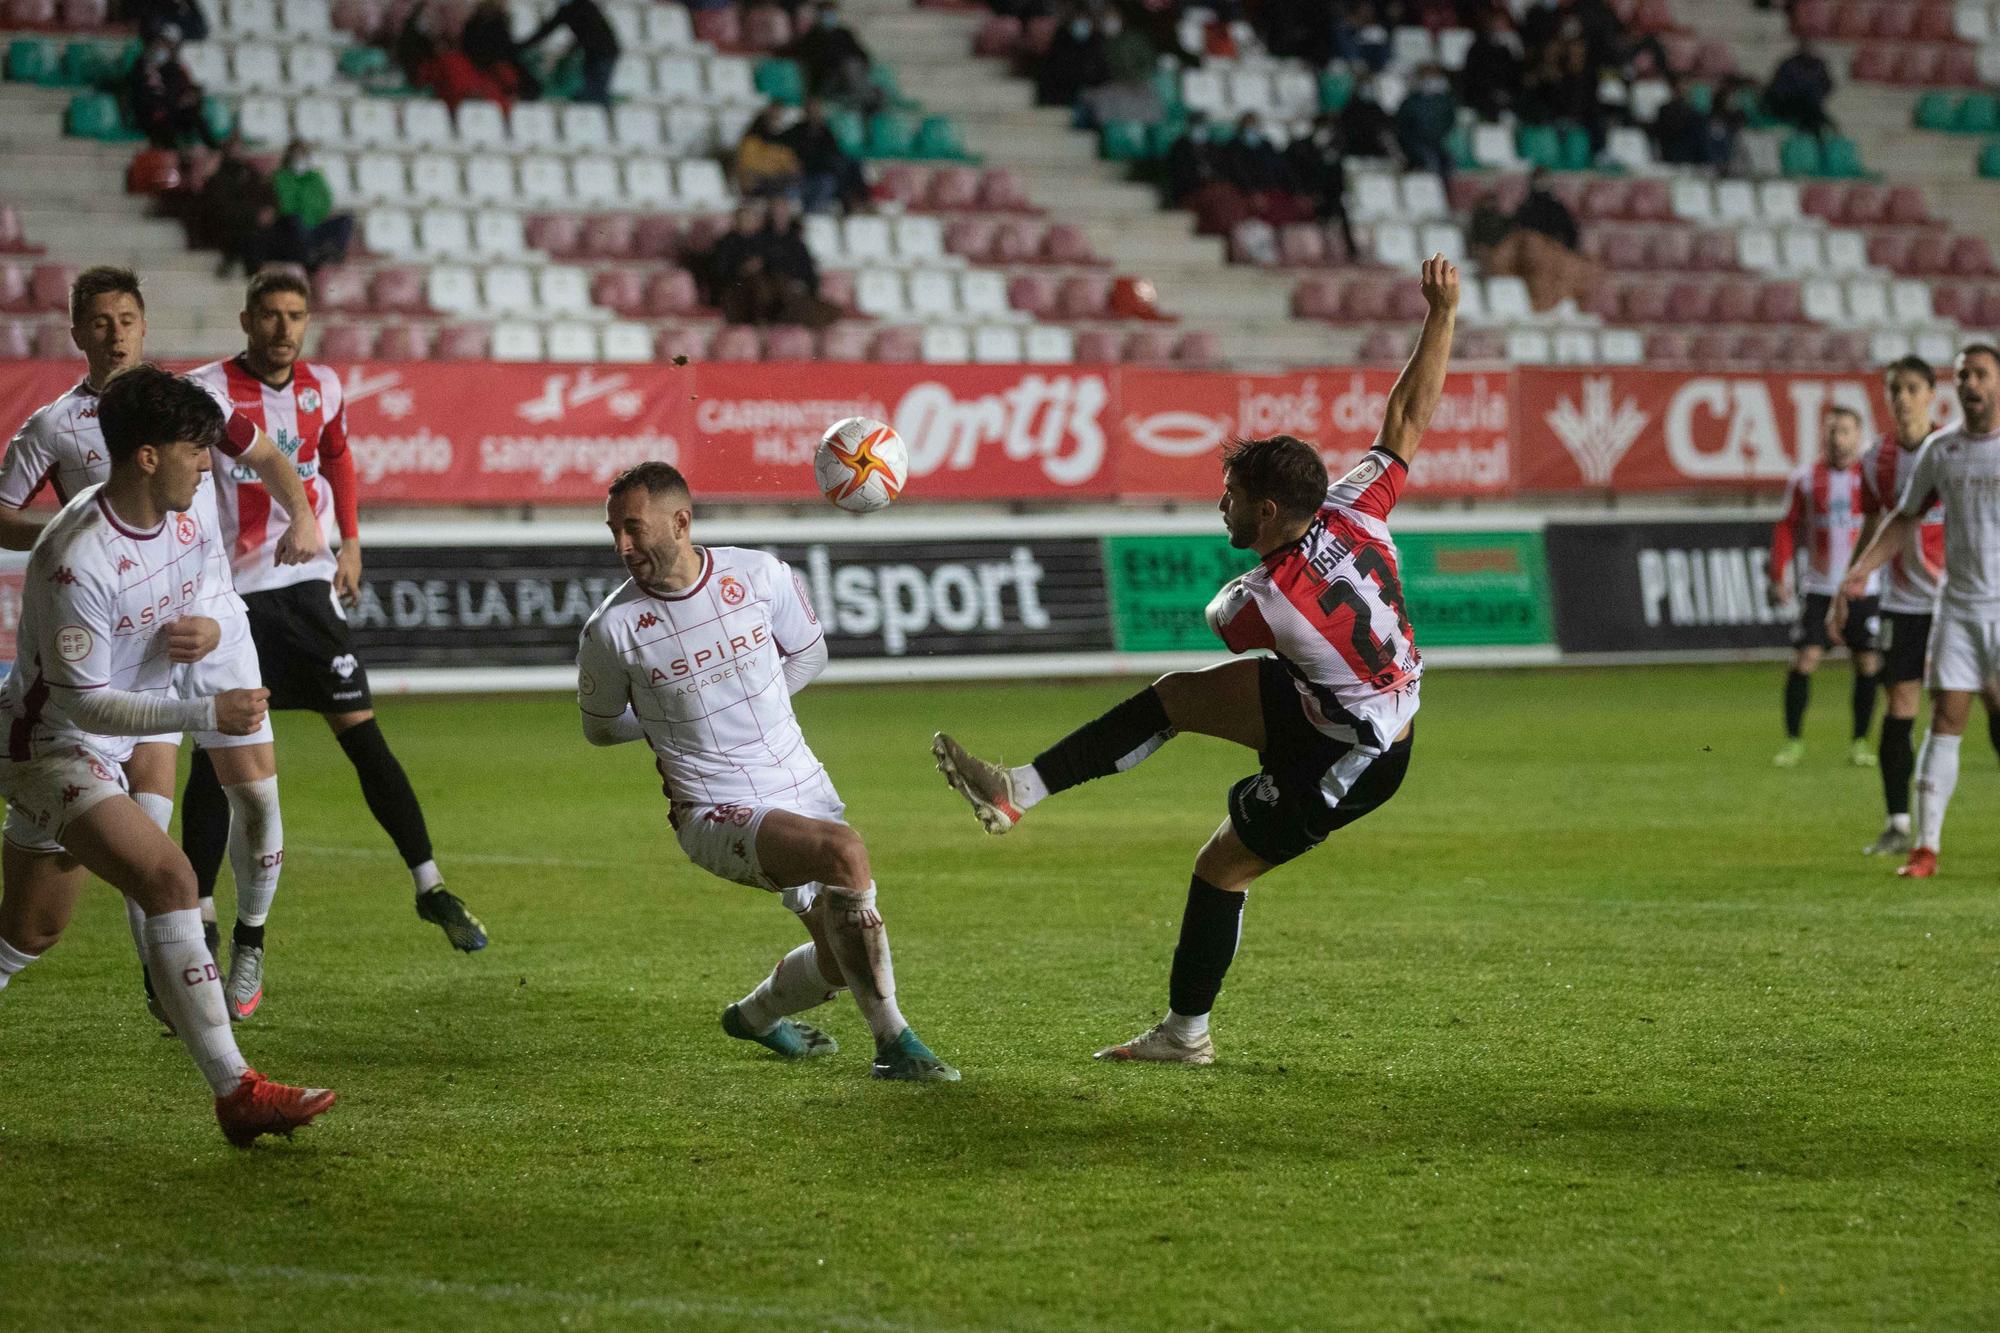 GALERÍA | Las mejores imágenes del partido entre el Zamora CF y la Cultural y Deportiva Leonesa